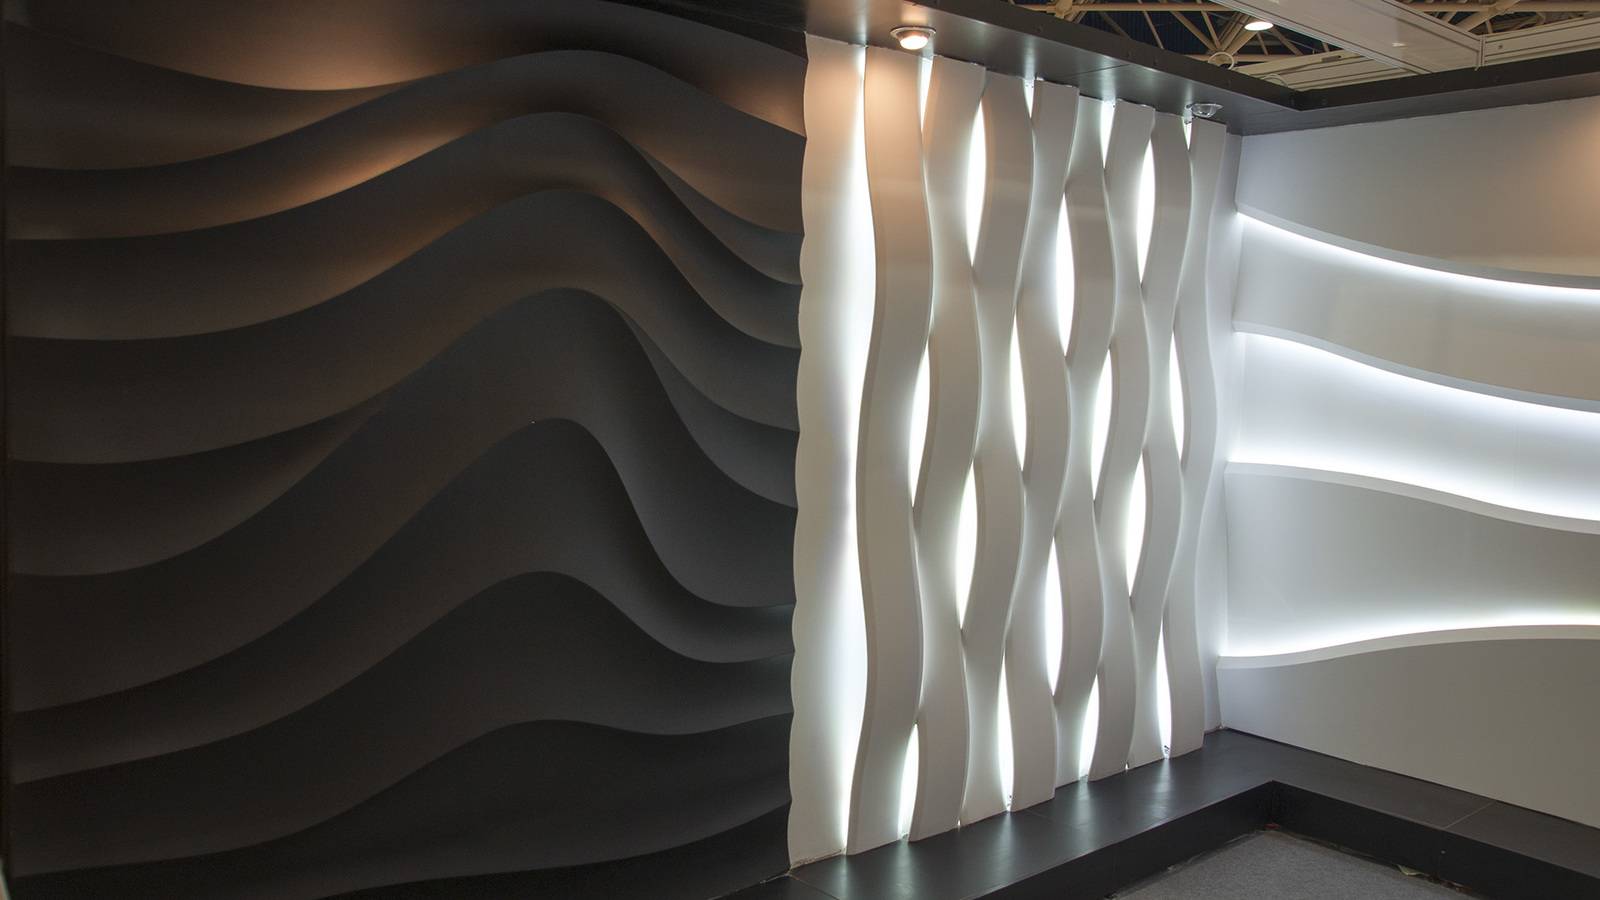 Декоративные 3д панели для стен в интерьере дома – креативный акцент в индустрии отделочных материалов